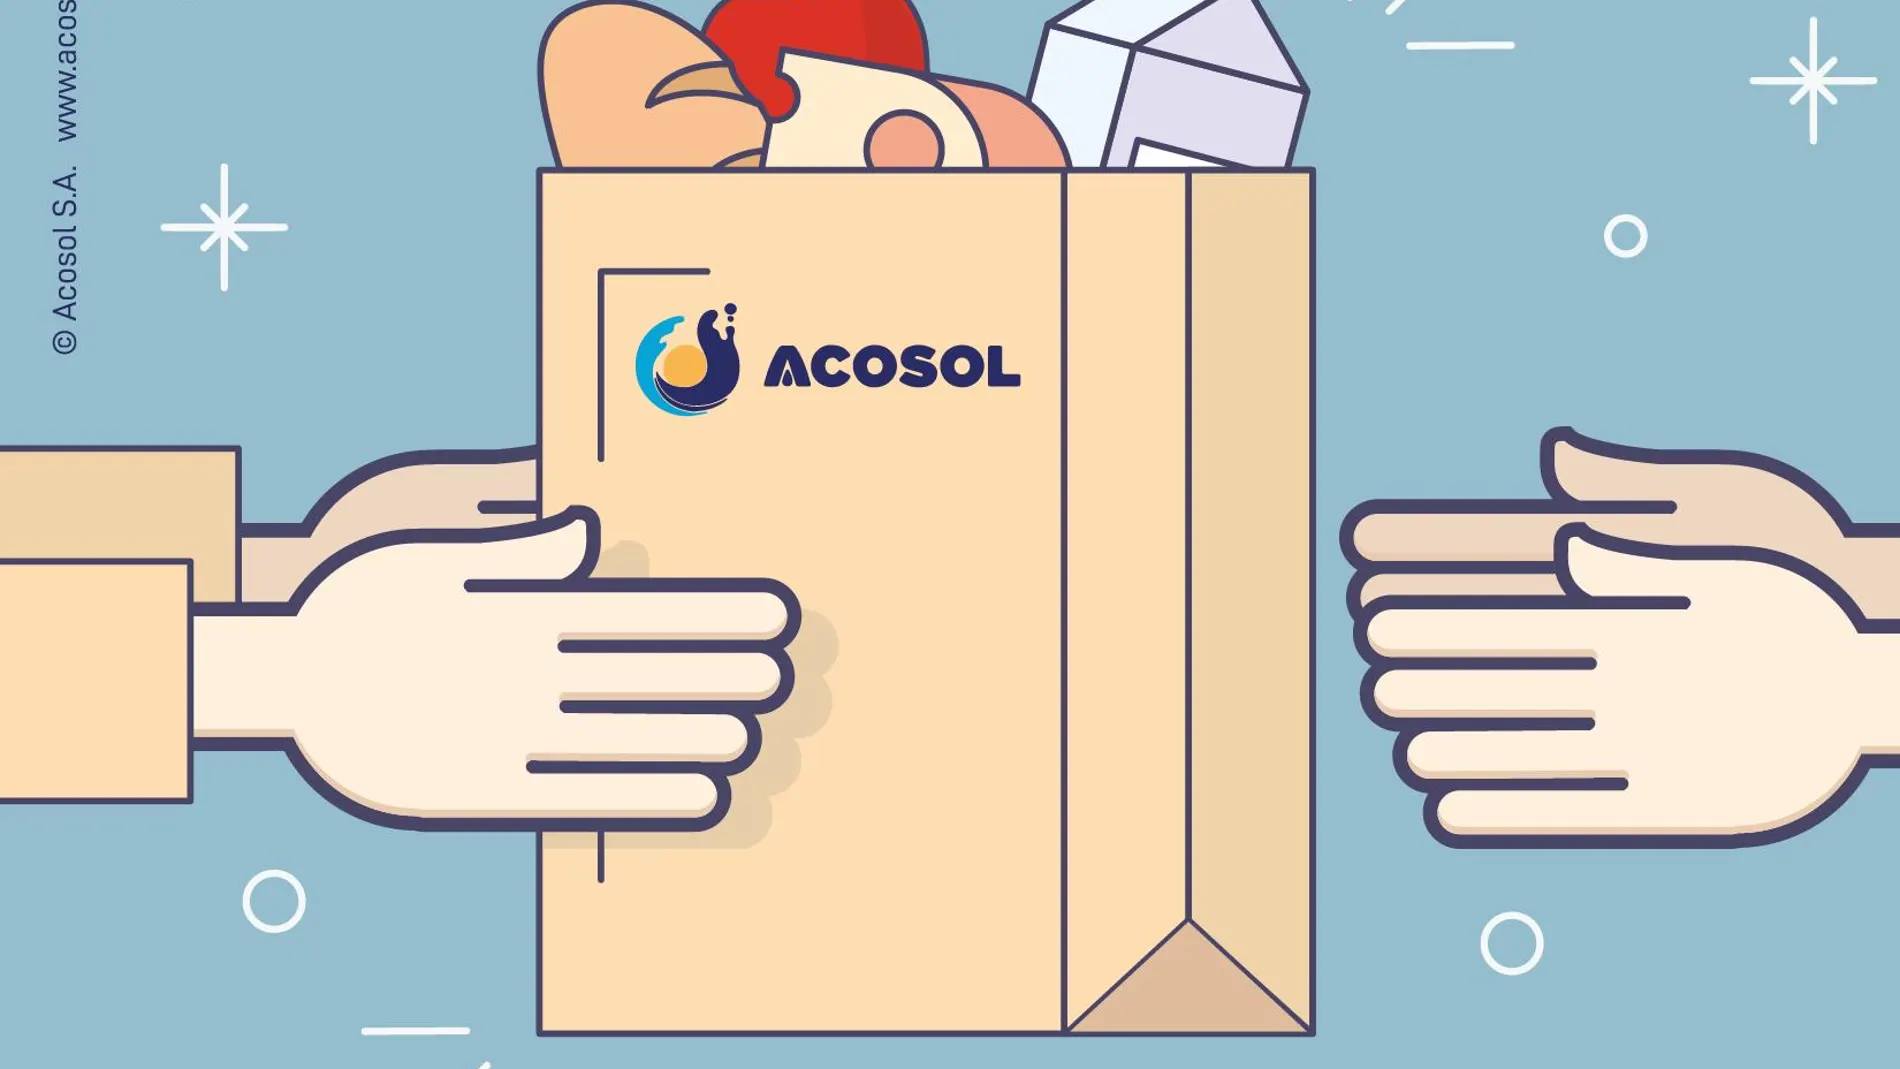 Cartel de la campaña solidario de Acosol